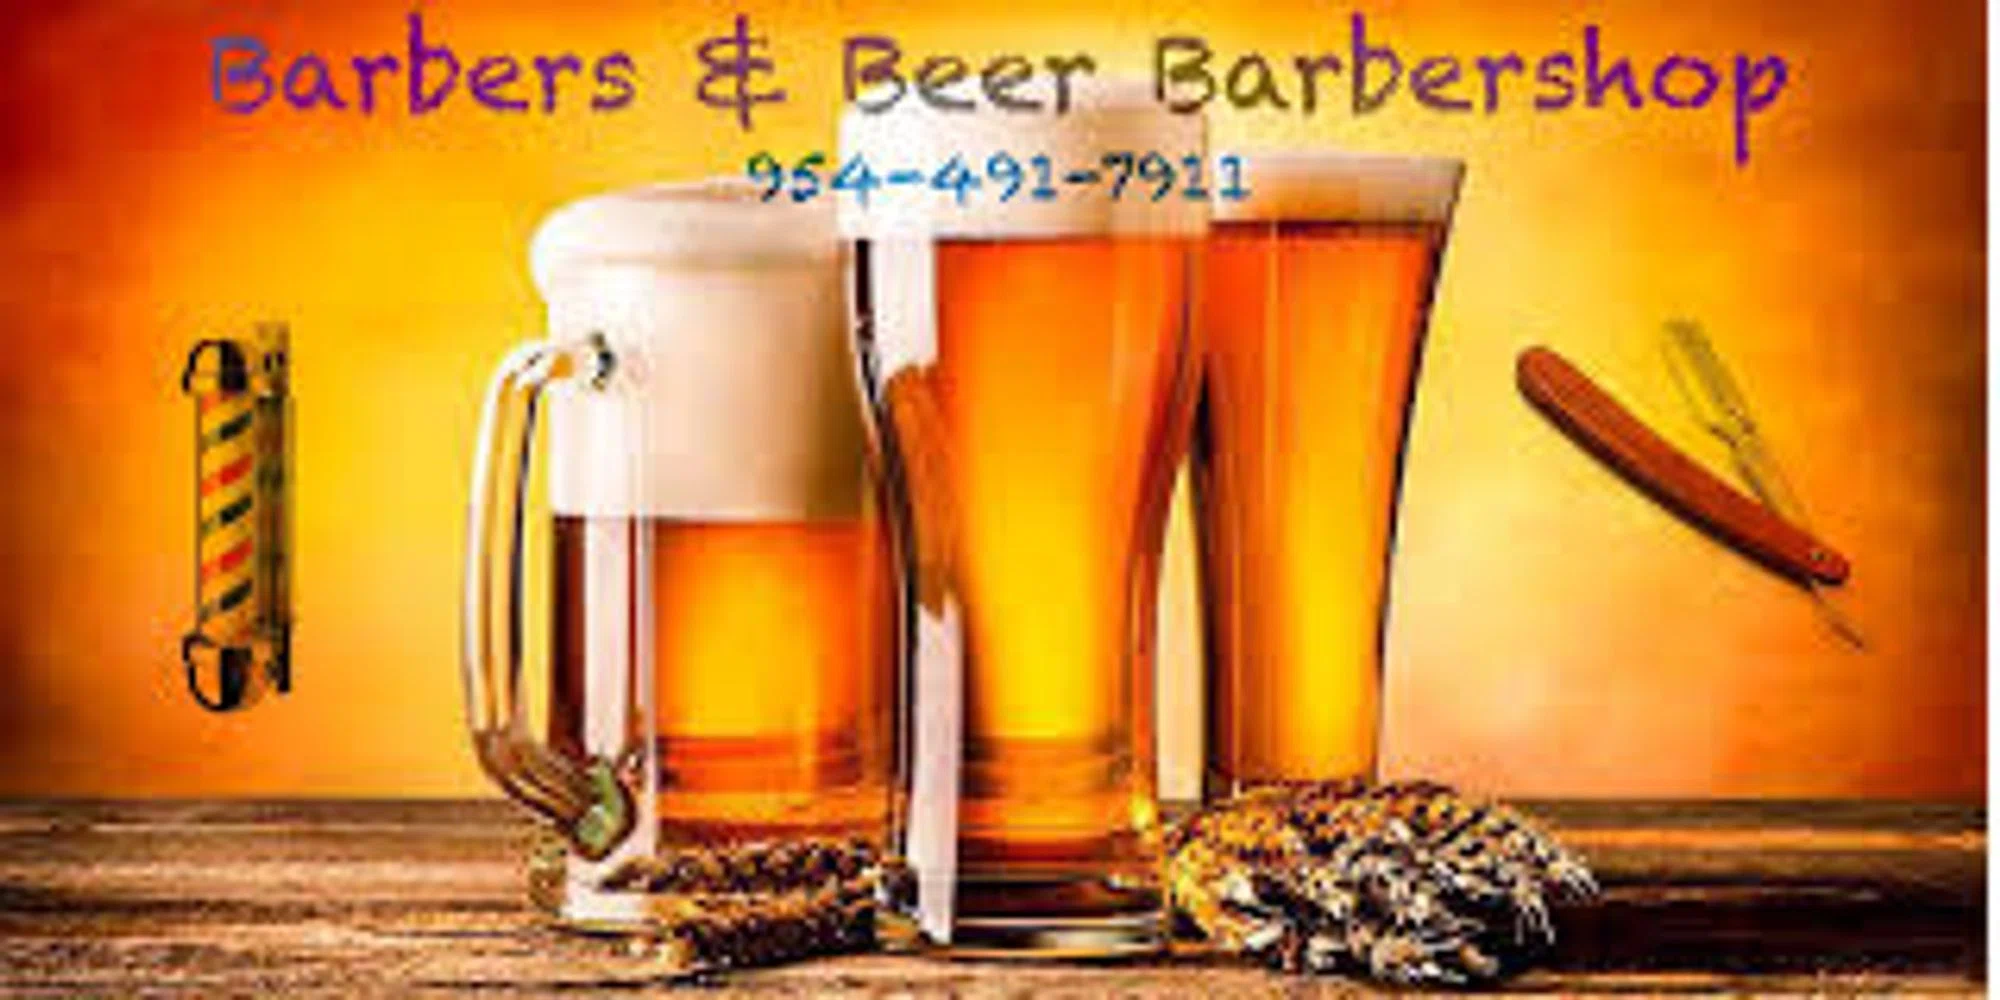 Barbers & Beer Barbershop